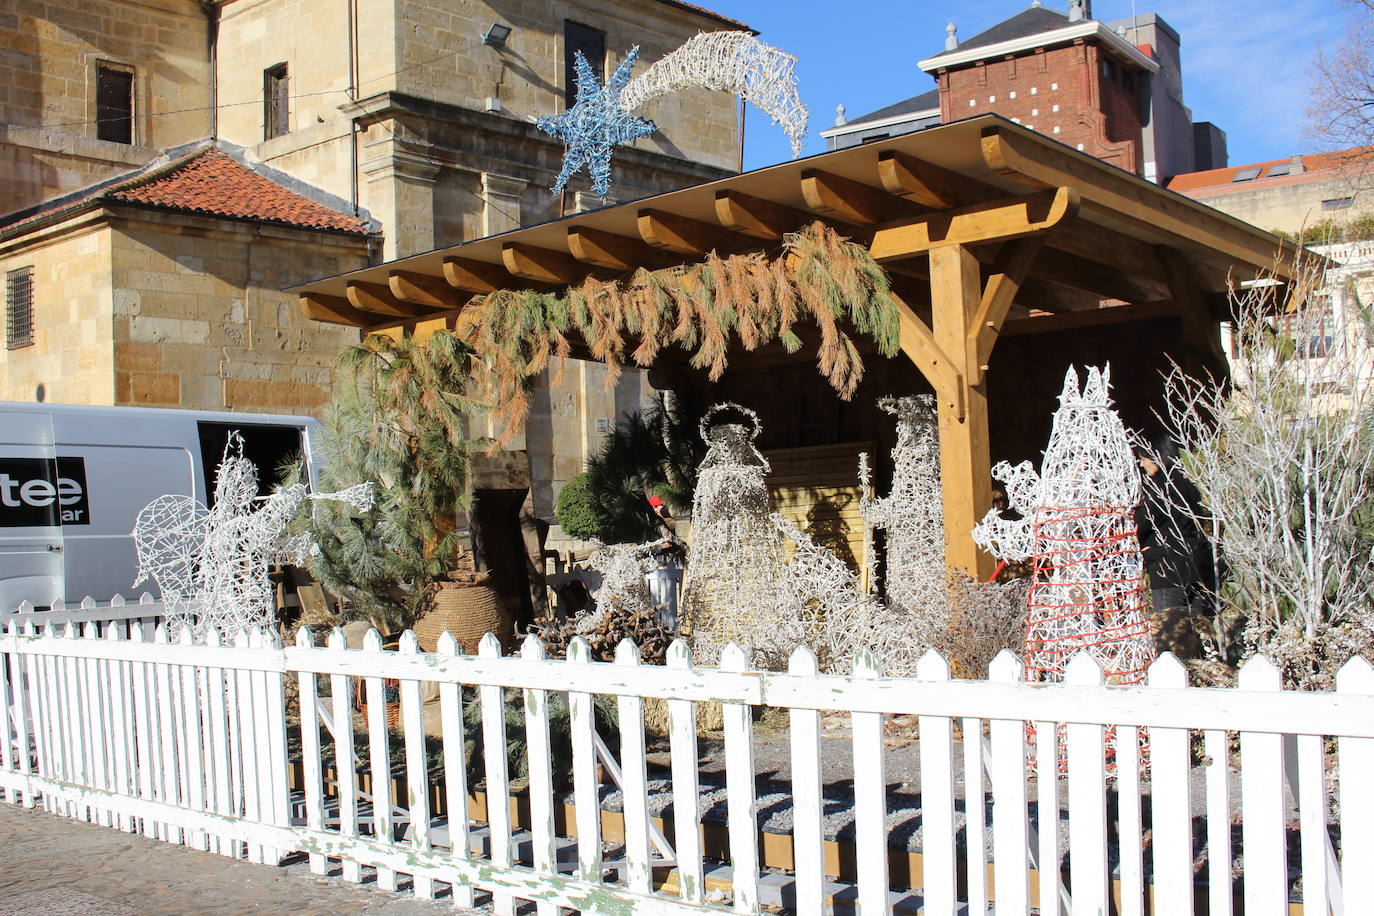 La decoración navideña de la ciudad de León vuelve a guardarse esperando una próxima navidad sin olas de virus